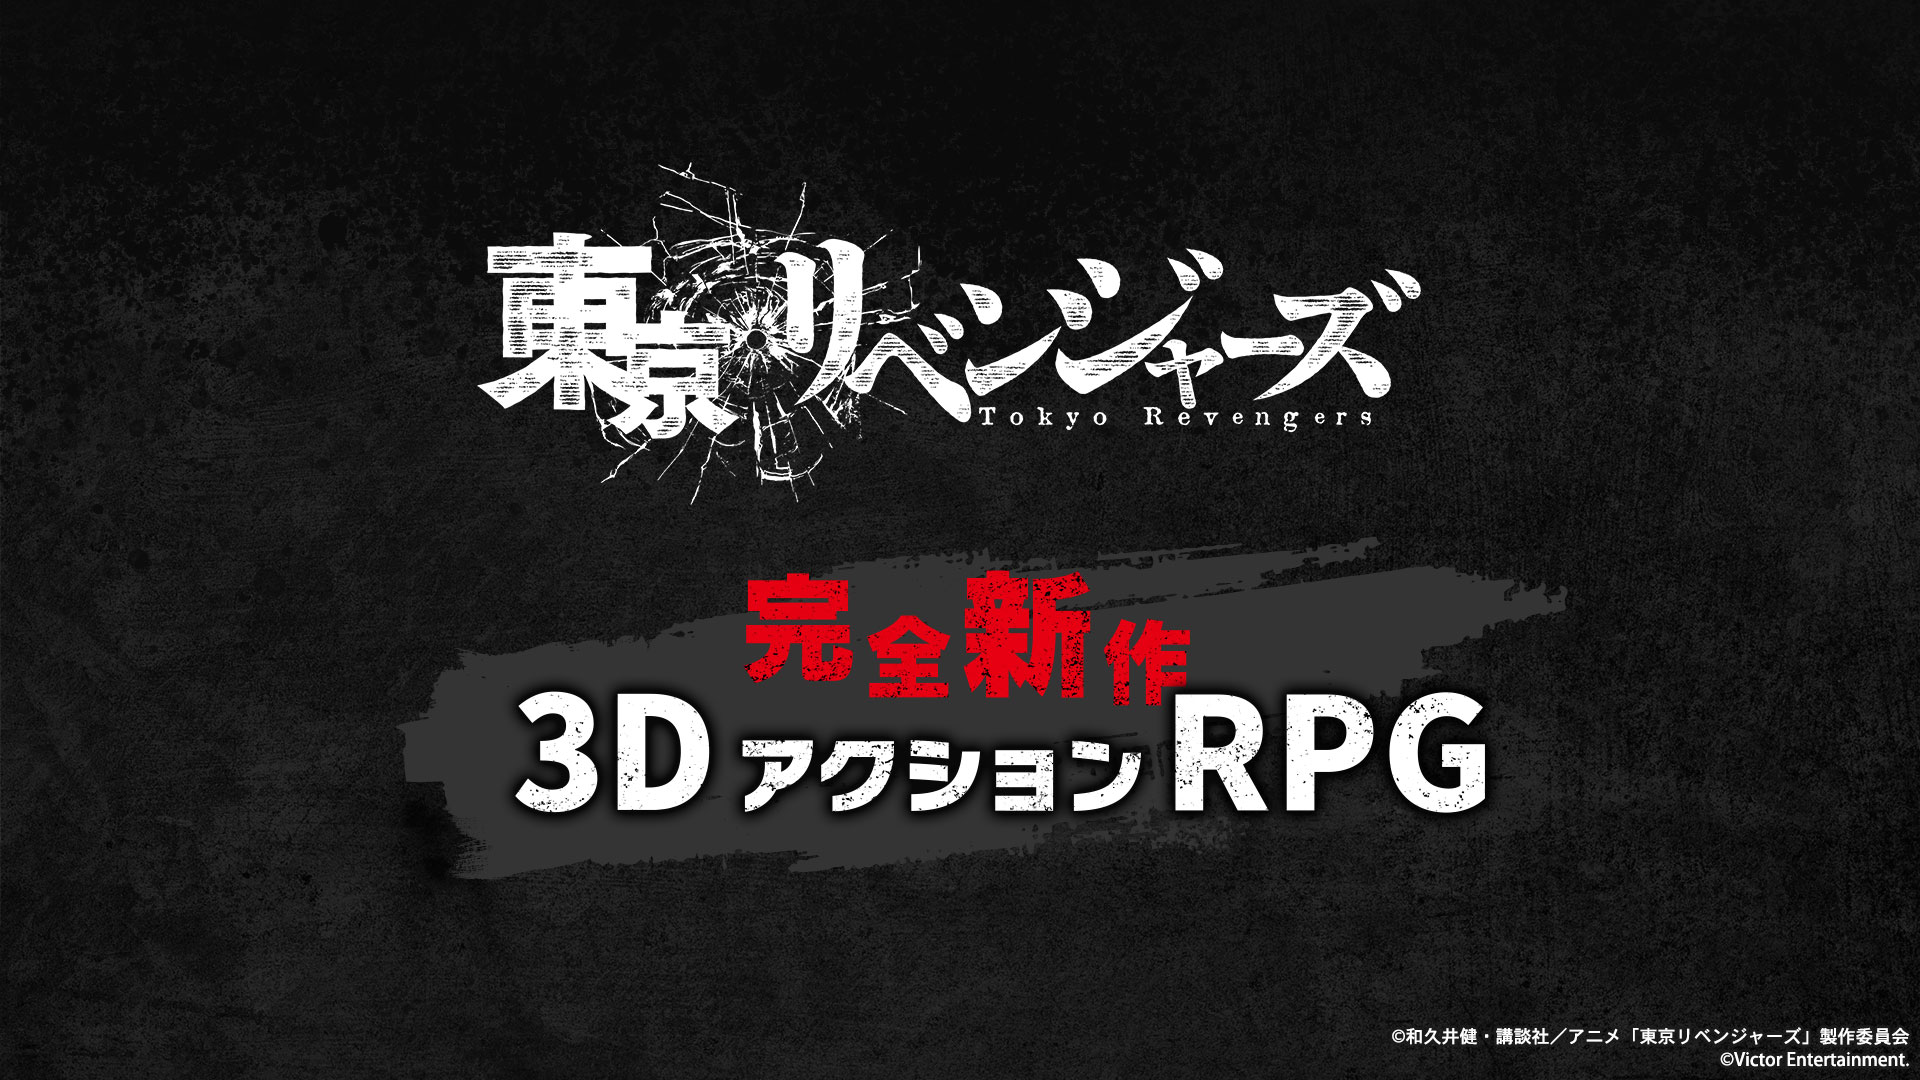 《东京复恩者》将推尾部3D动做RPG 古冬上岸多仄台